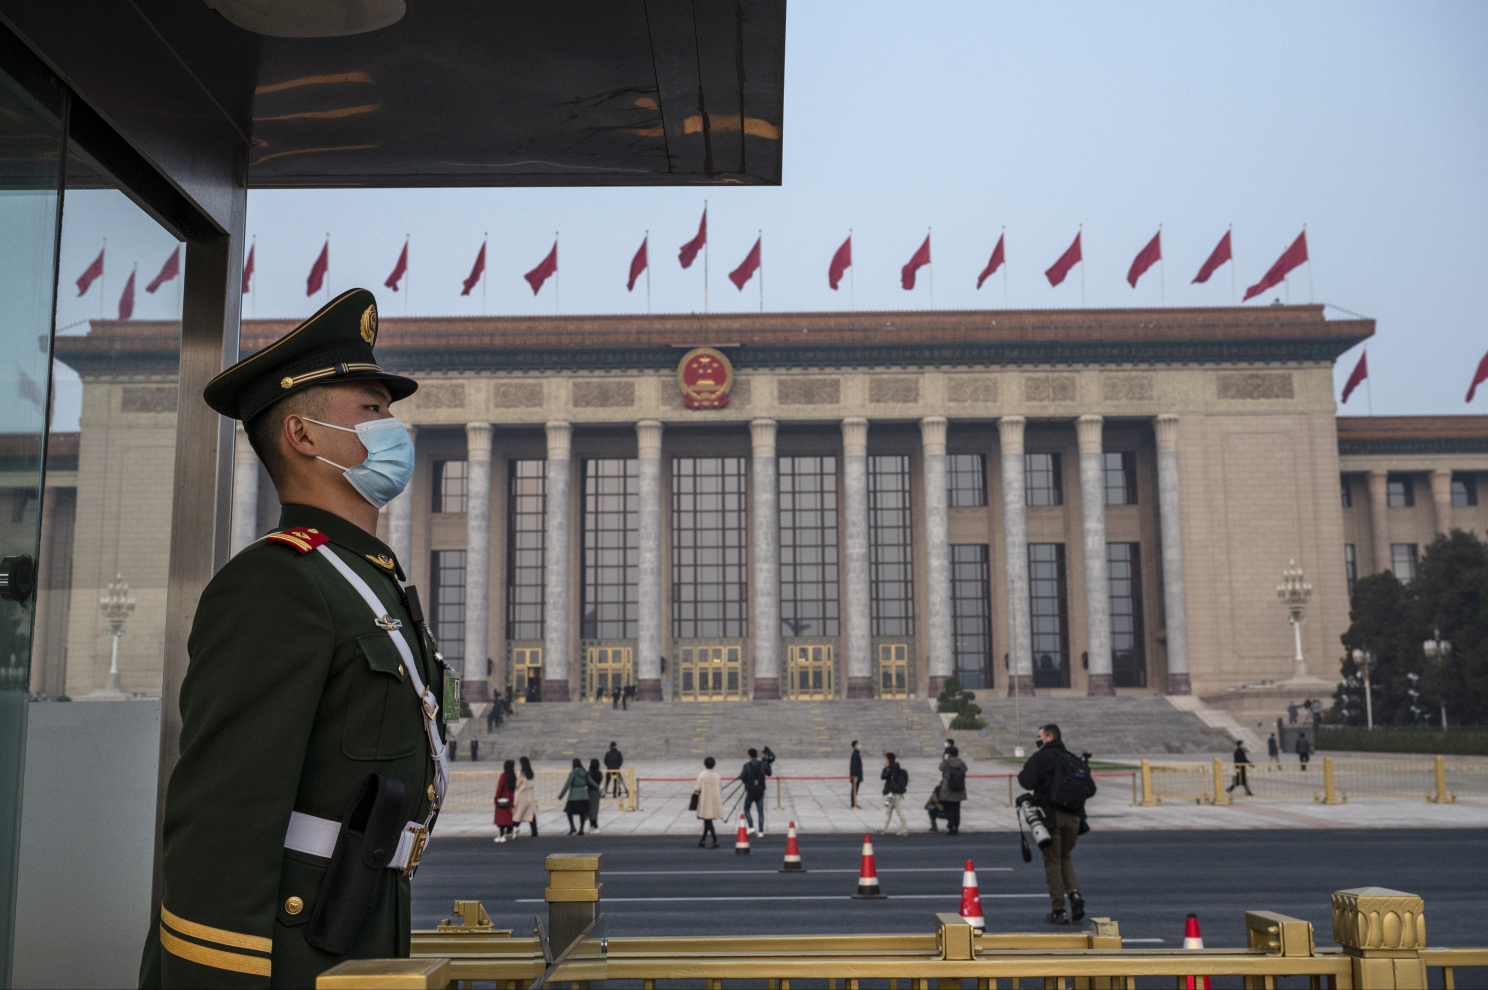 Cứu trợ kinh tế bất thành, Bắc Kinh tìm cách đổ lỗi